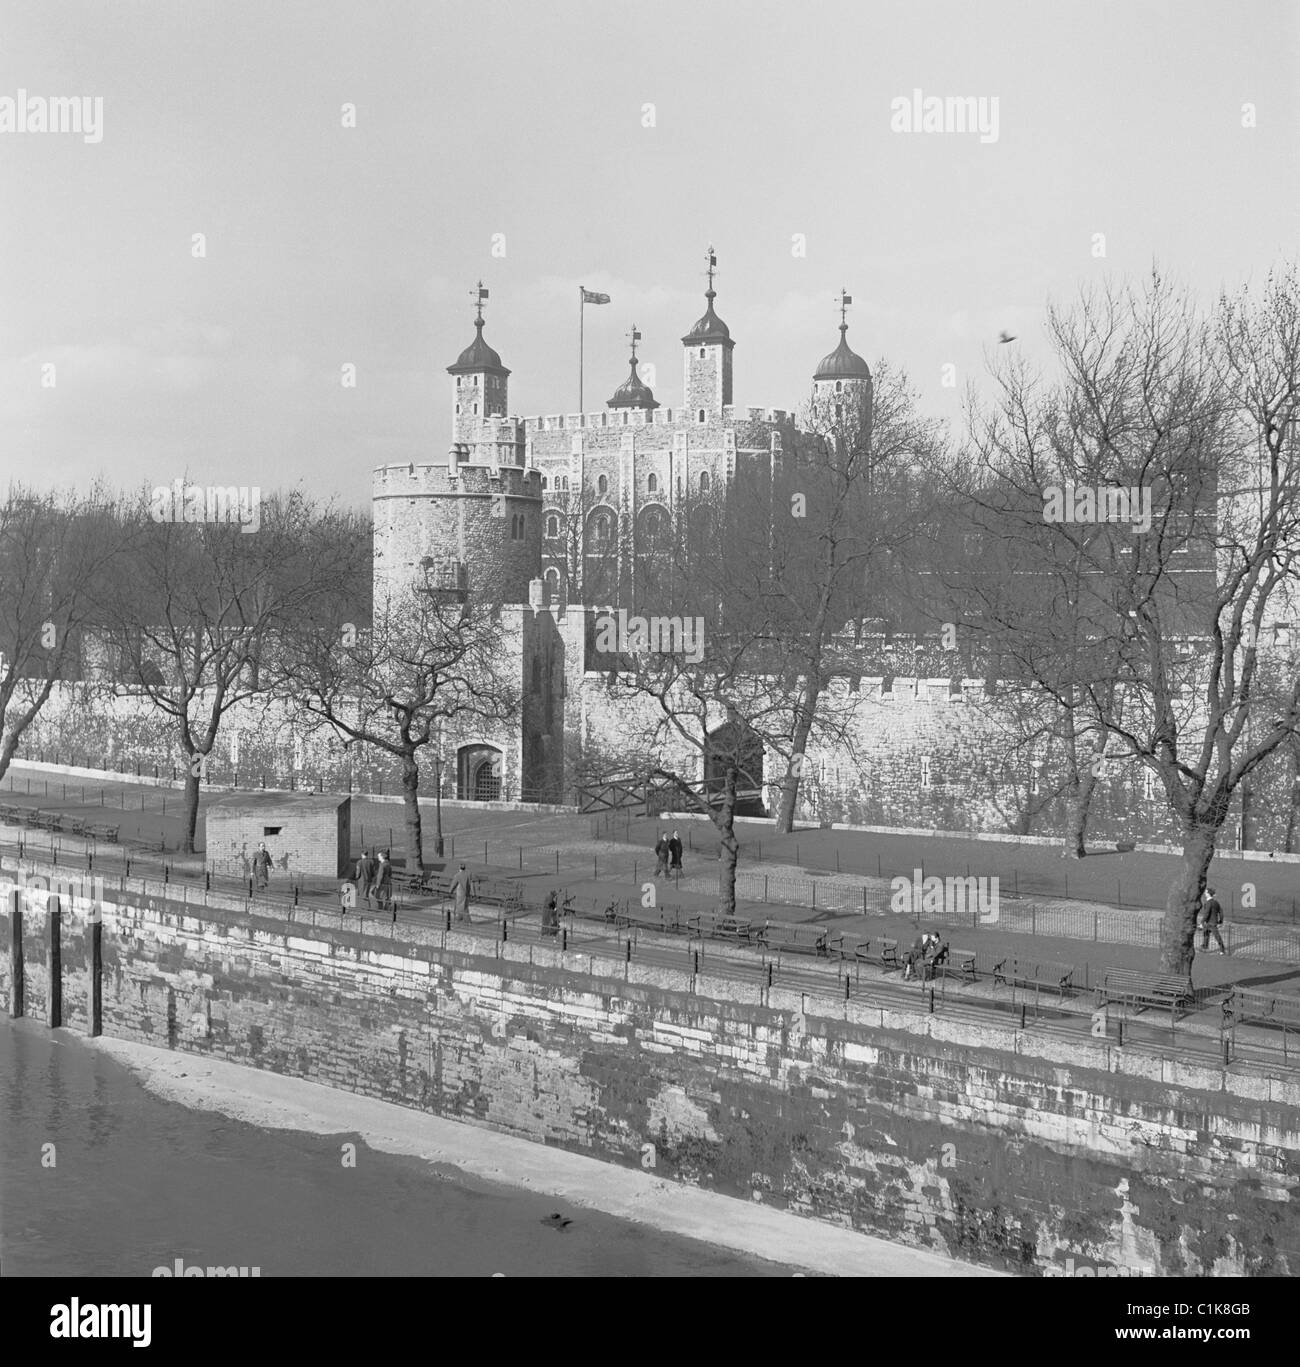 Années 1950, Londres, une vue du Palais Royal, la Tour de Londres qui date de 1078, dans cette photographie historique de J Allan Cash. Banque D'Images